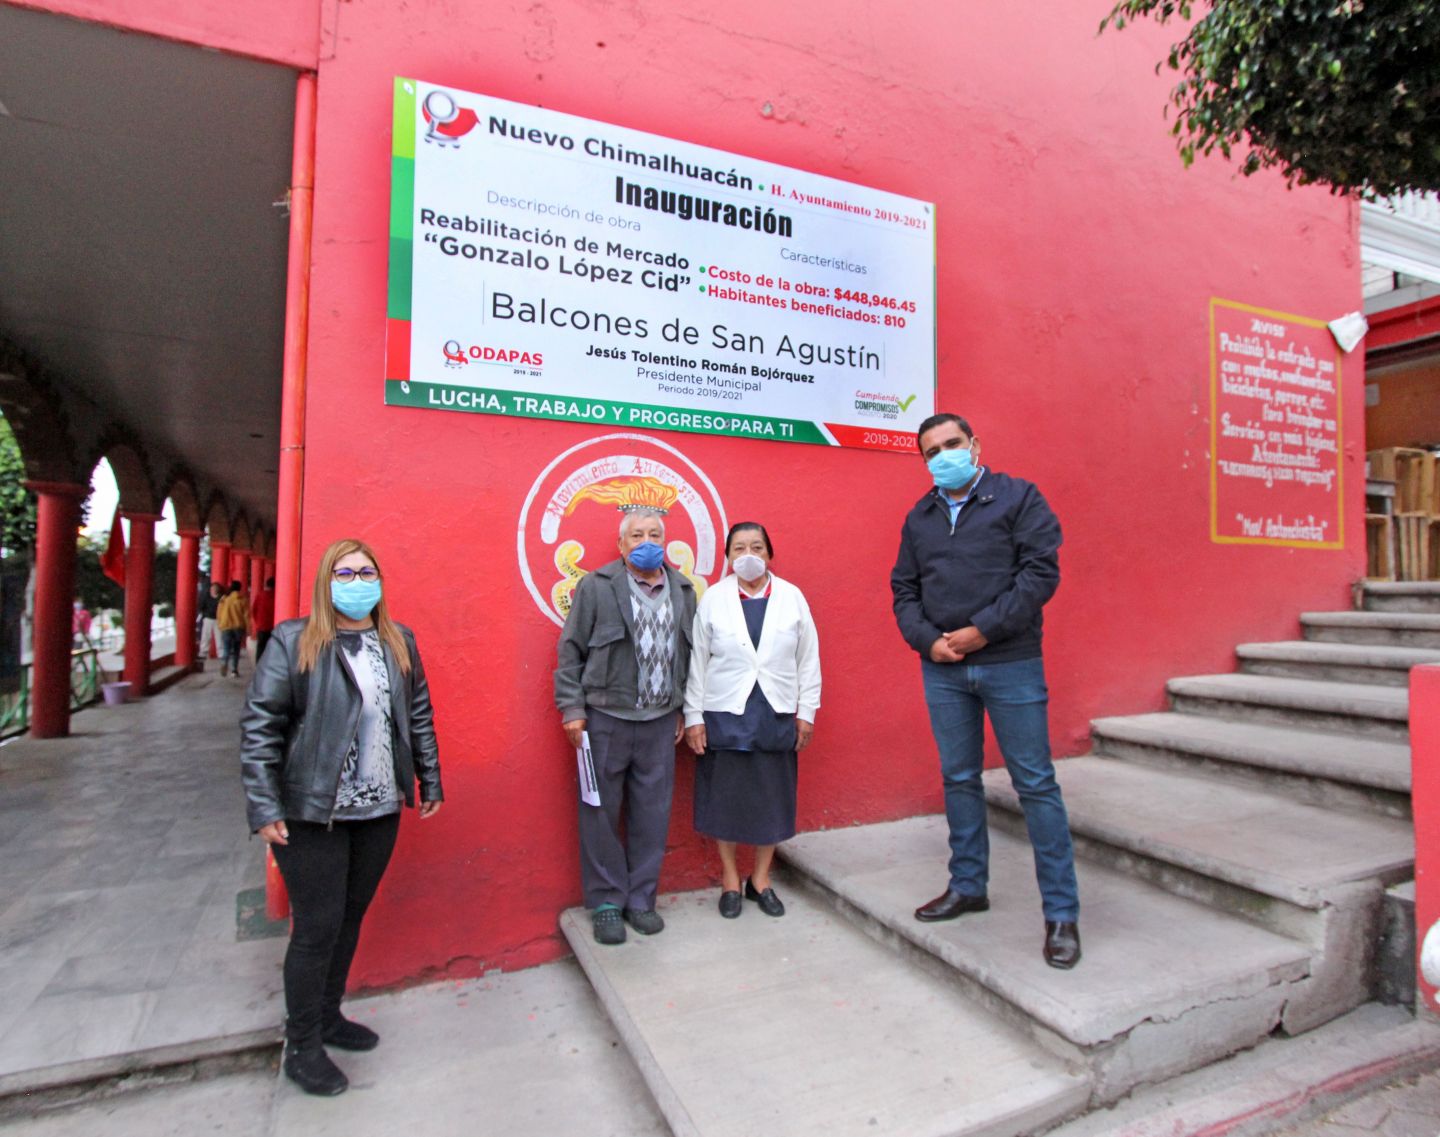 #El gobierno de Chimalhuacán rehabilito el  mercado Gonzalo López Cid